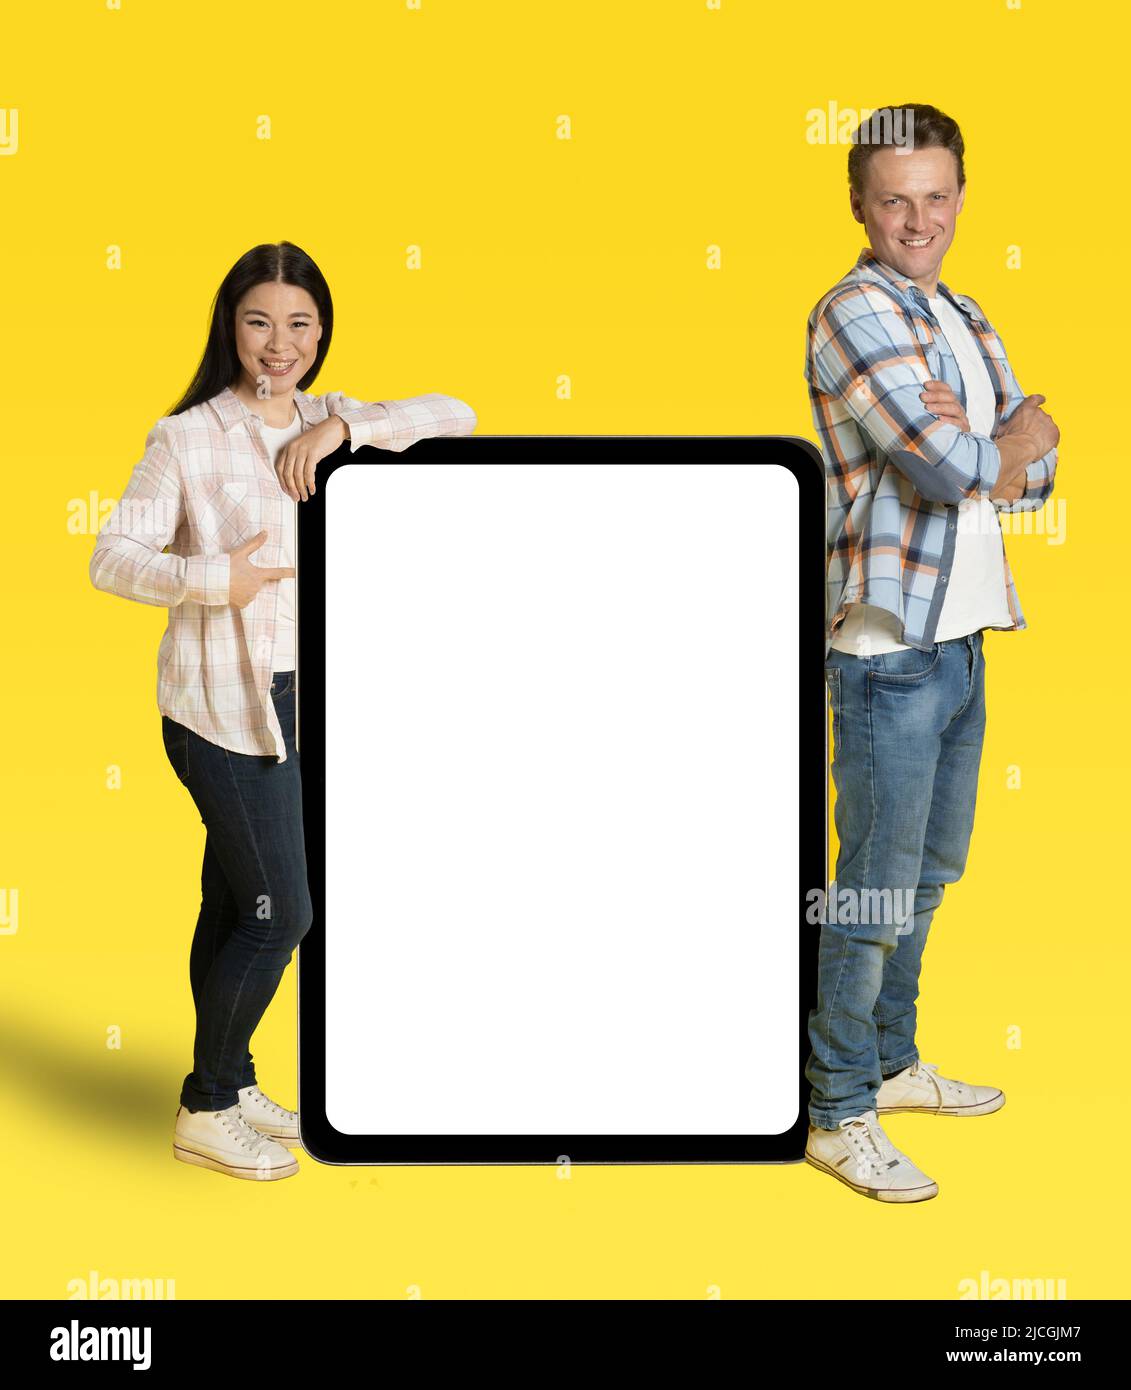 Une femme asiatique et un homme du caucase se sont pendus sur un immense Tablet pc avec écran blanc, une publicité d'application mobile regardant la caméra isolée sur fond jaune. Positionnement du produit. Banque D'Images